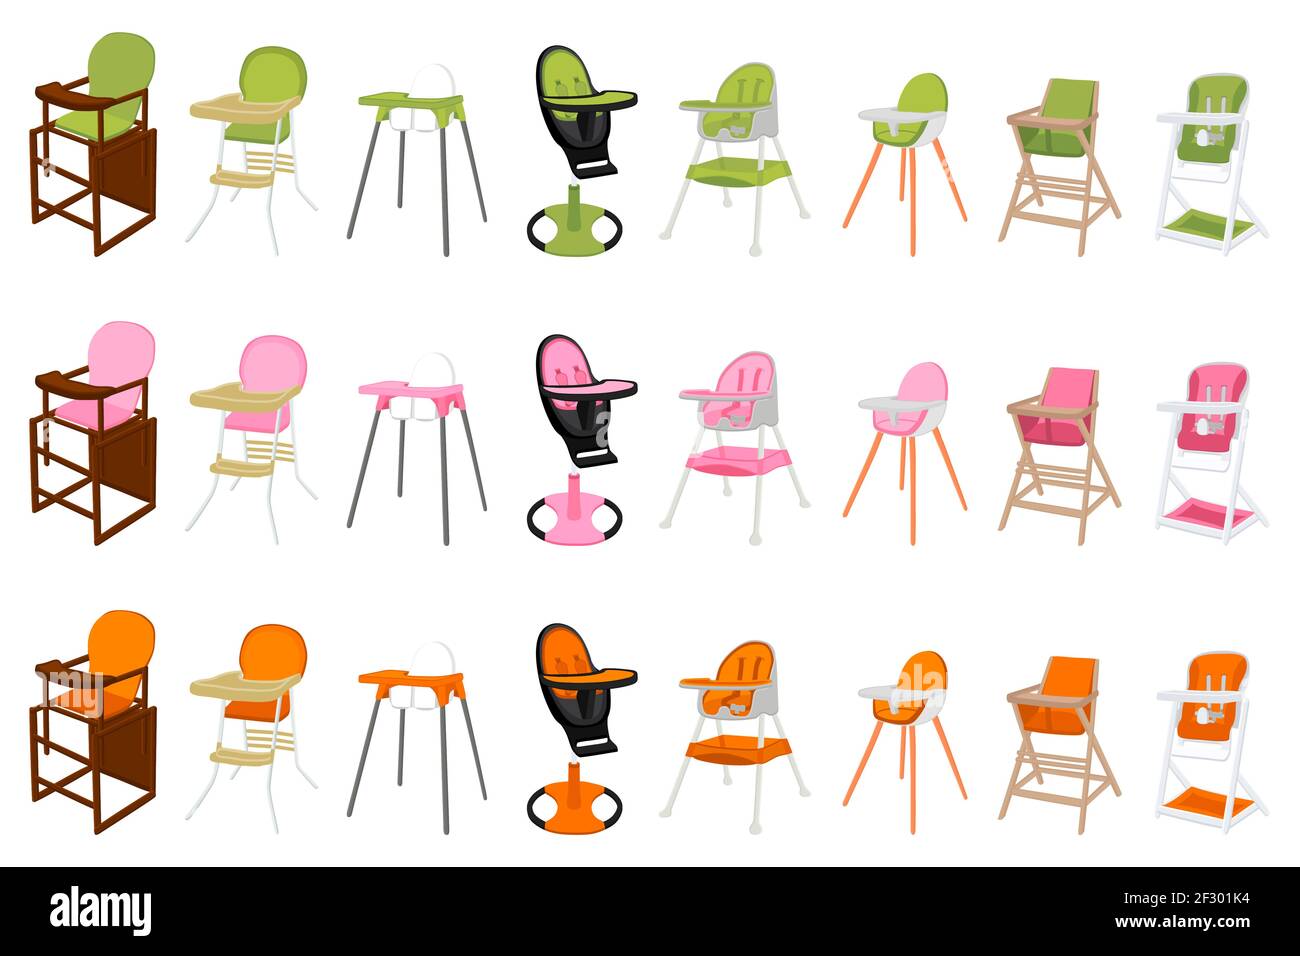 Ilustración sobre el tema silla alta moderna y colorida para la  alimentación del bebé. Dibujo que consiste en una colección de diseños de  colores silla para niños en las piernas altas. Ki